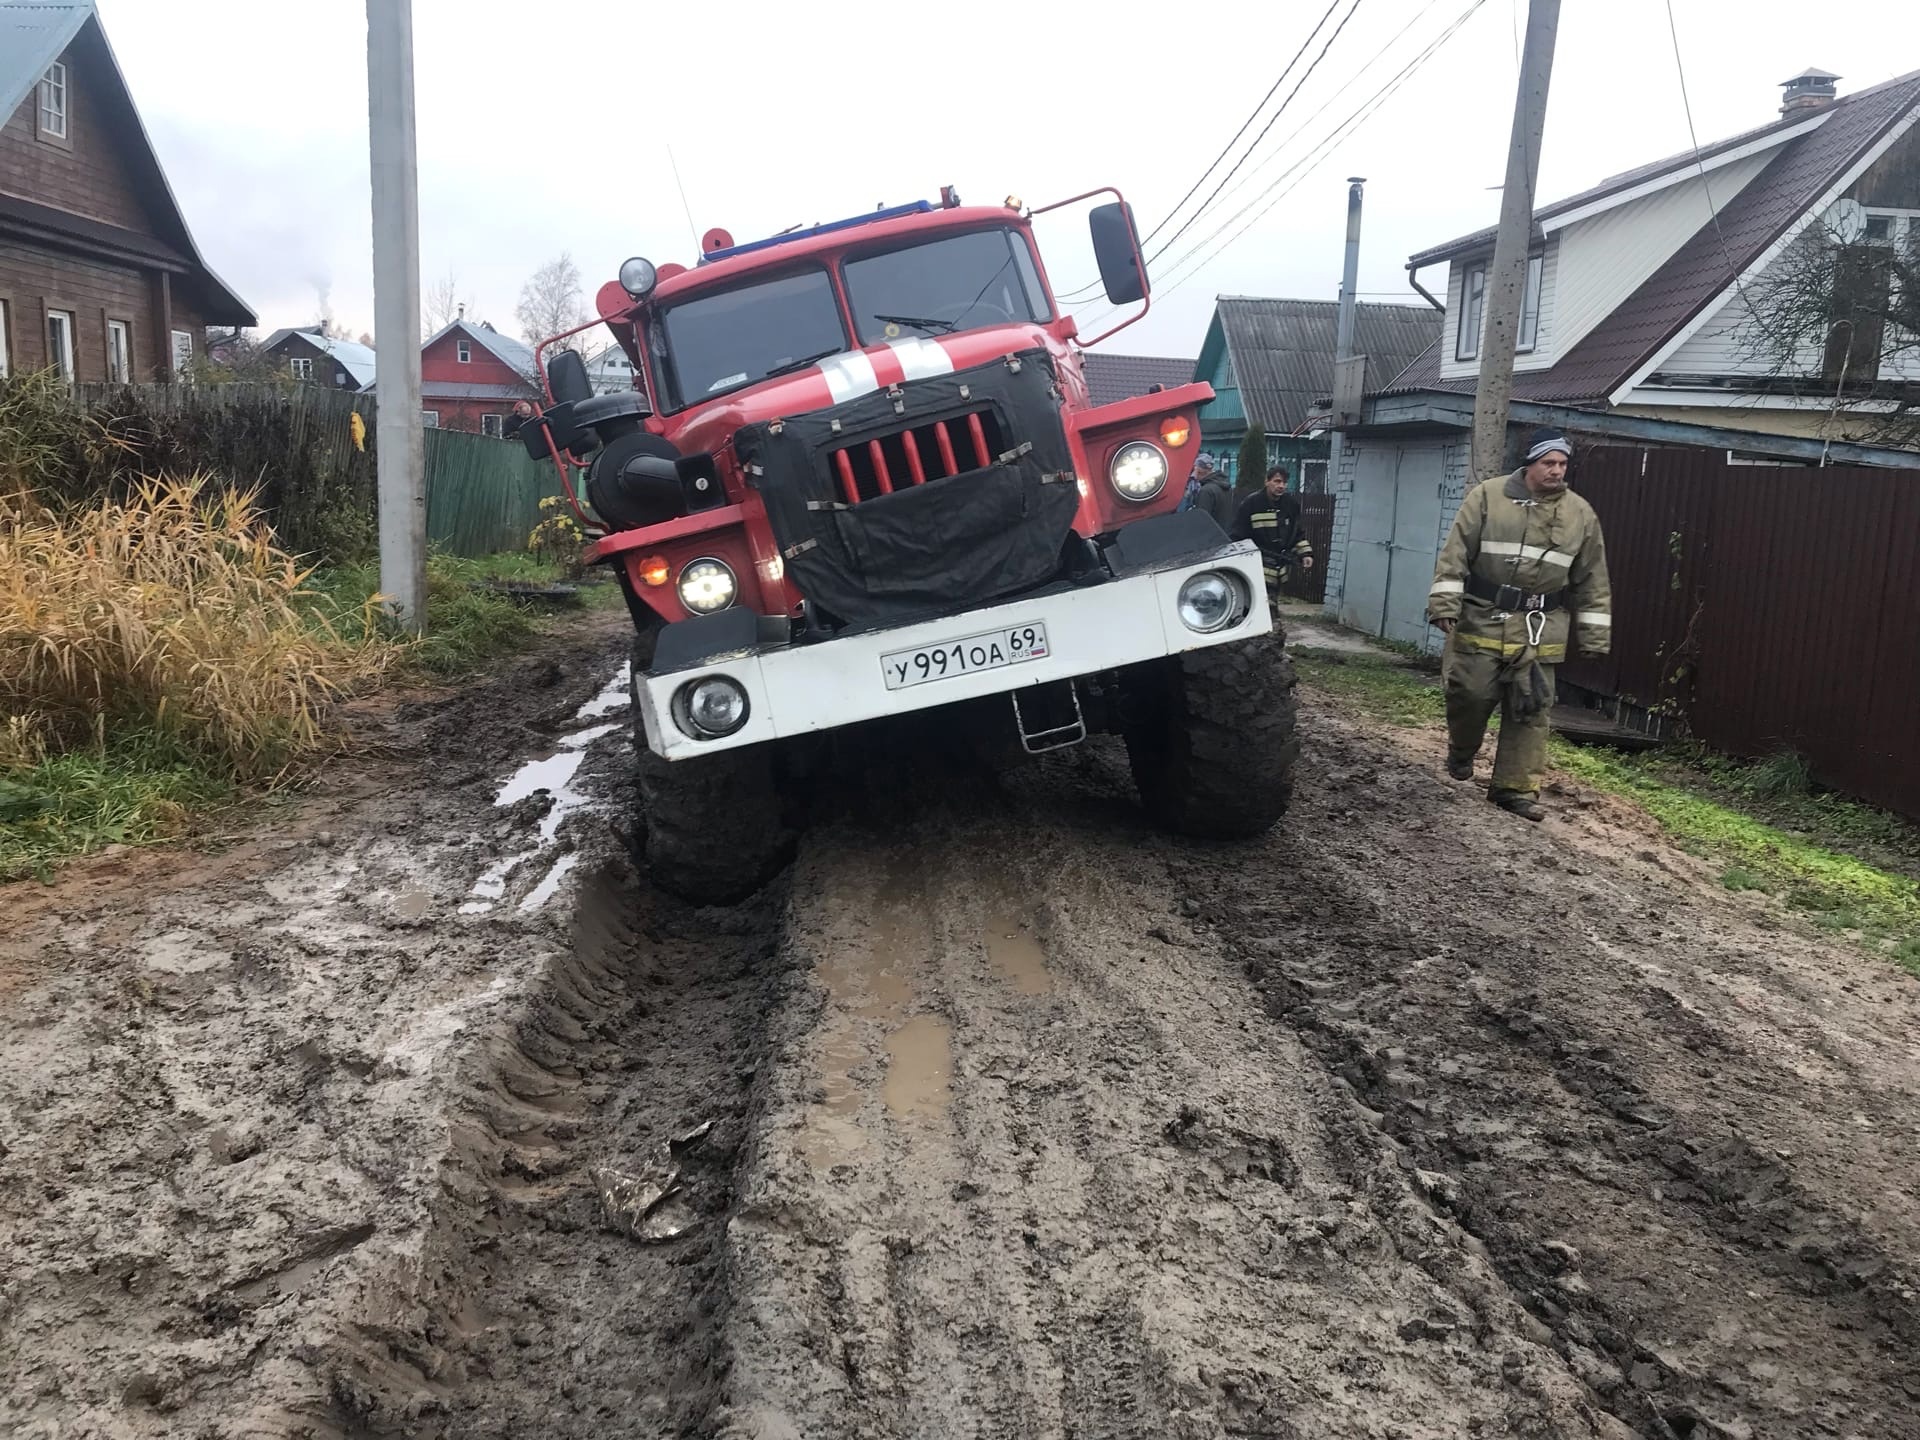 Пожарная машина застряла после тушения пожара в Нелидово